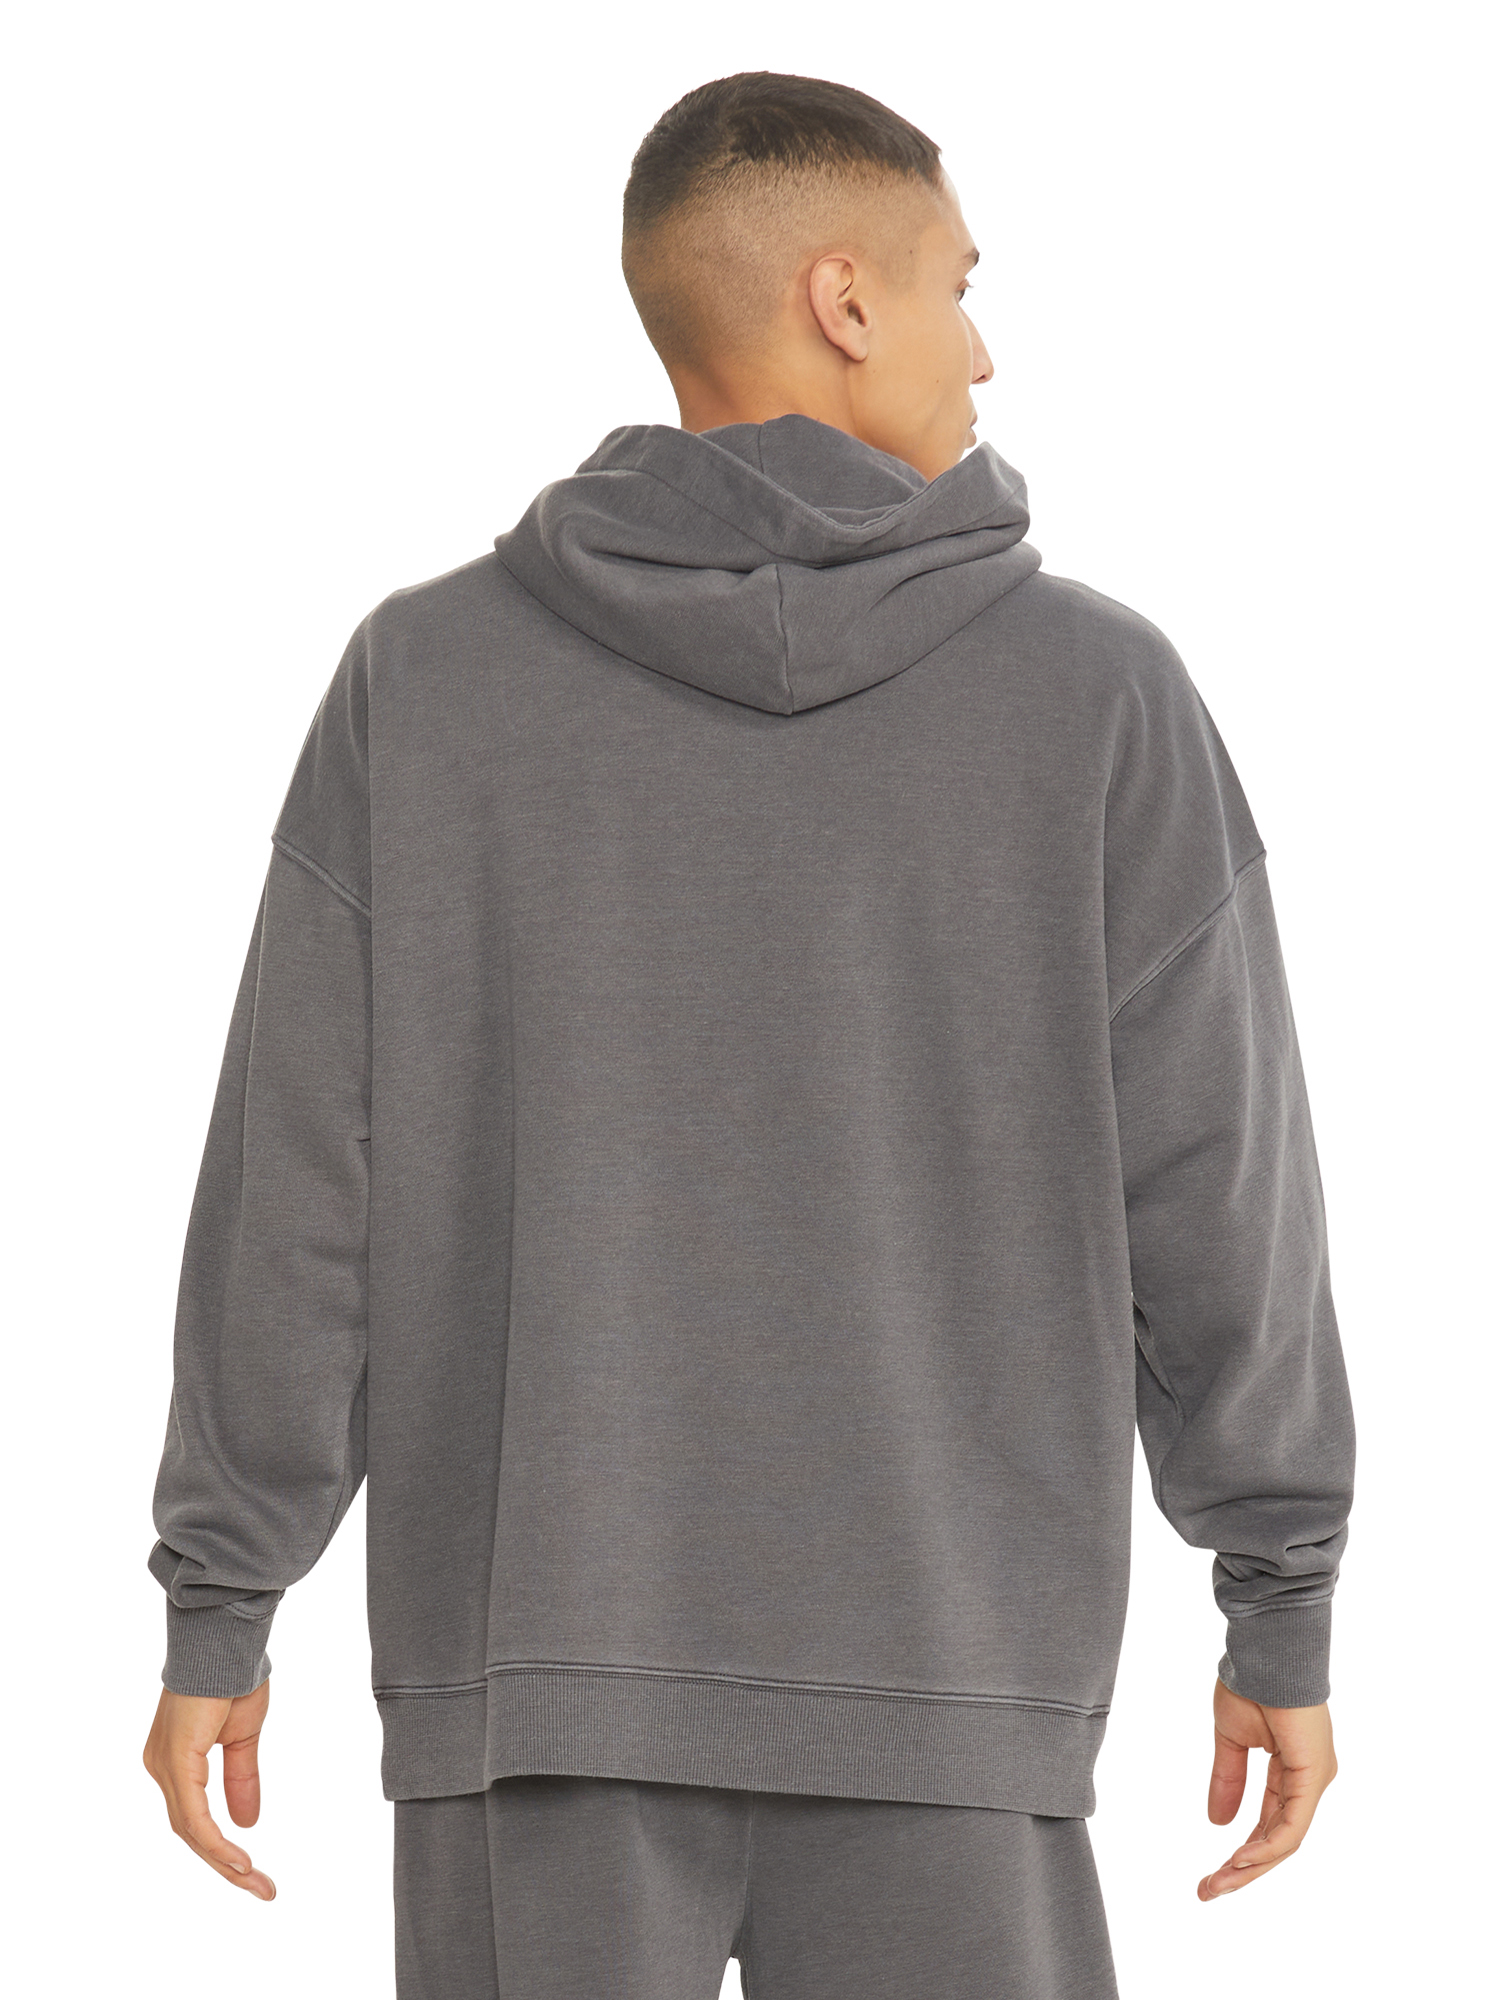 No Boundaries All Gender Fleece Hoodie Sweatshirt, Men's Sizes XS - 5XL - image 4 of 5